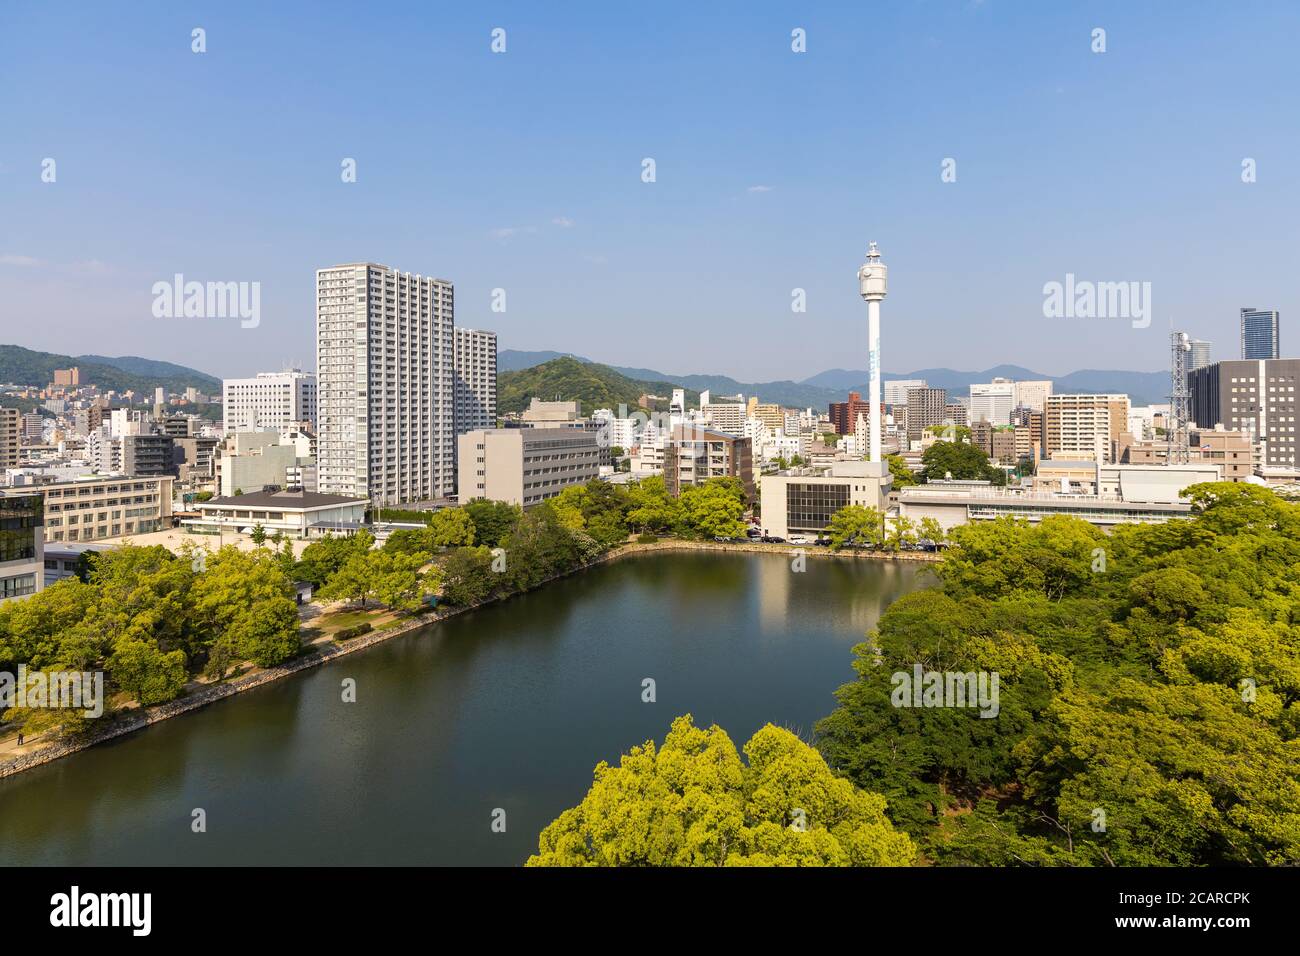 Vista dall'acqua sulla città giapponese di Hiroshima, a sud-ovest dell'isola di Honshu, Giappone. La prima città al mondo che fu sottoposta a nucl Foto Stock